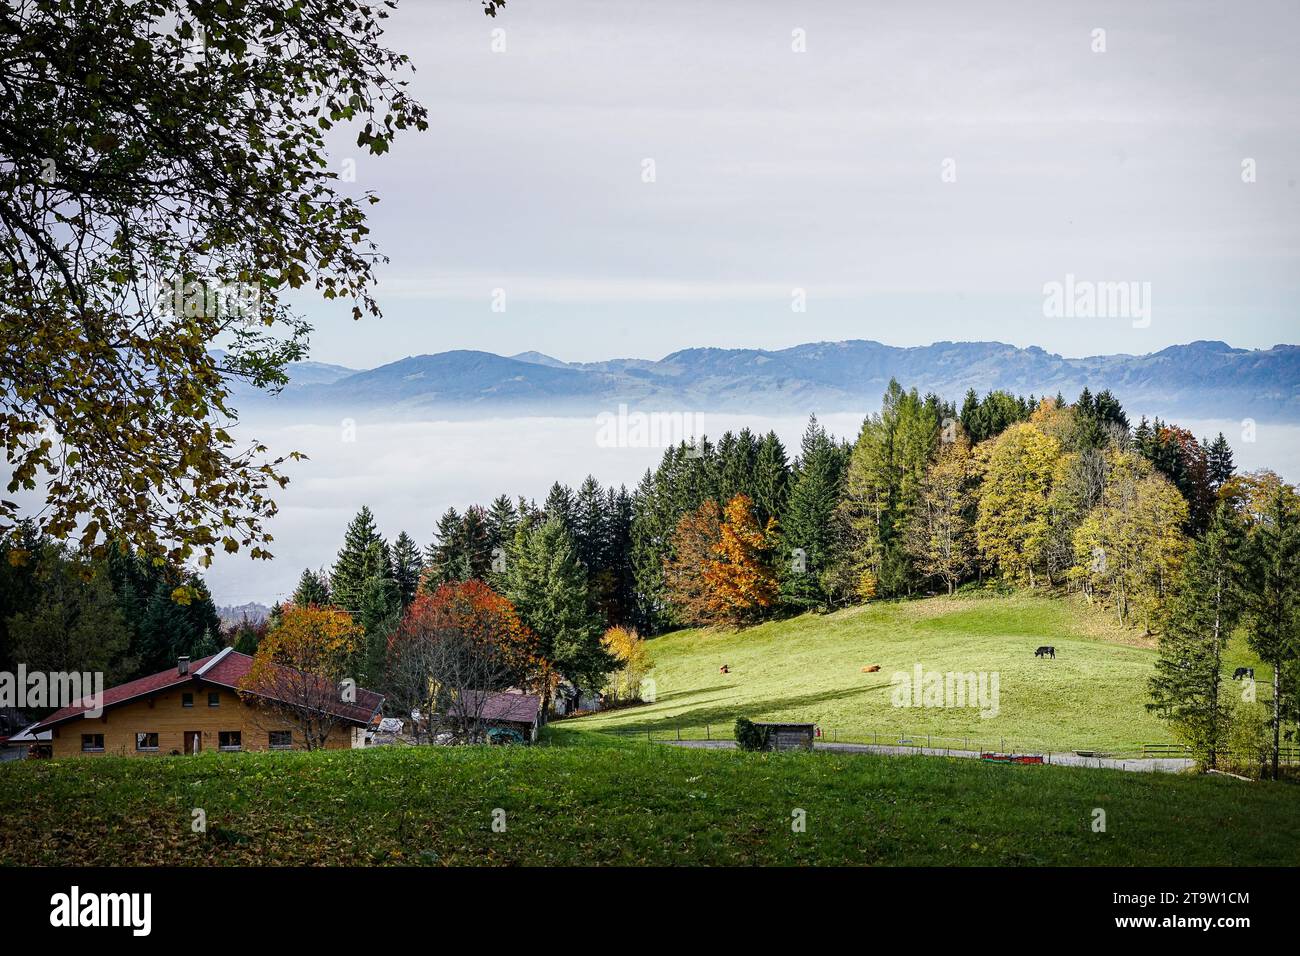 Una vista nebbiosa sulle montagne e in primo piano, un lussureggiante prato alpino aggiunge un tocco di verde alla scena. Foto Stock